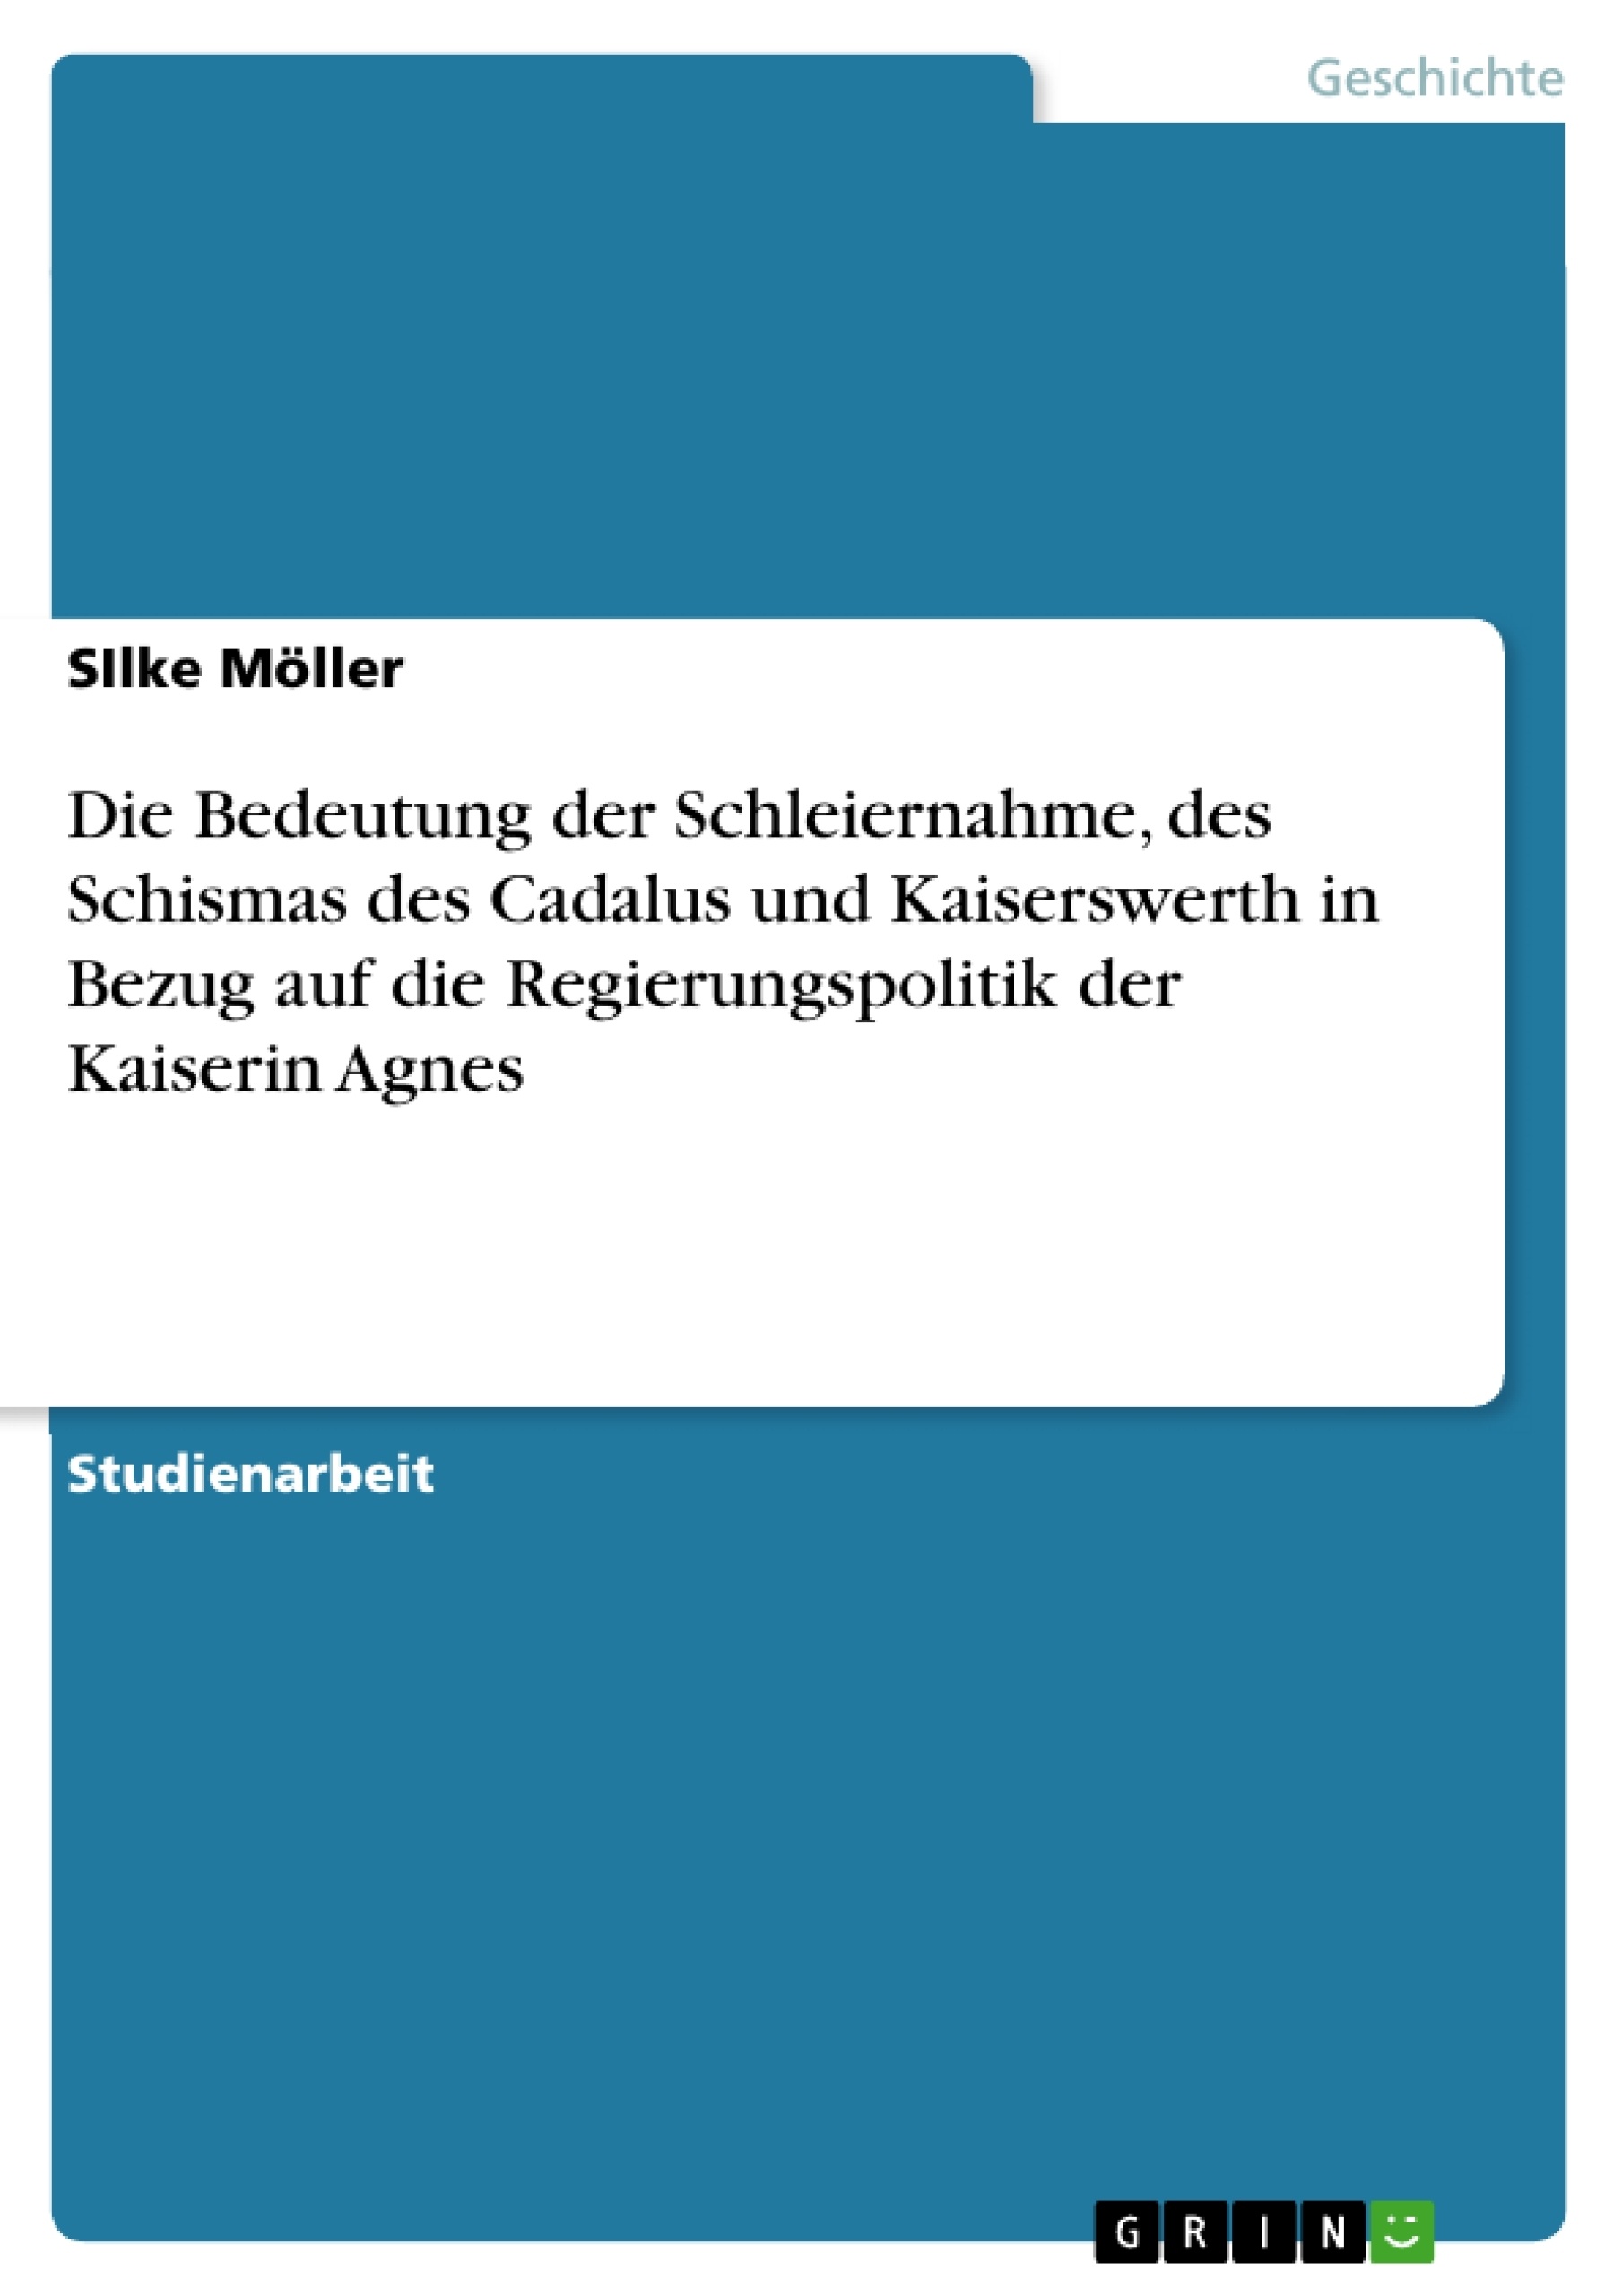 Title: Die Bedeutung der Schleiernahme, des Schismas des Cadalus und Kaiserswerth in Bezug auf die Regierungspolitik der Kaiserin Agnes 